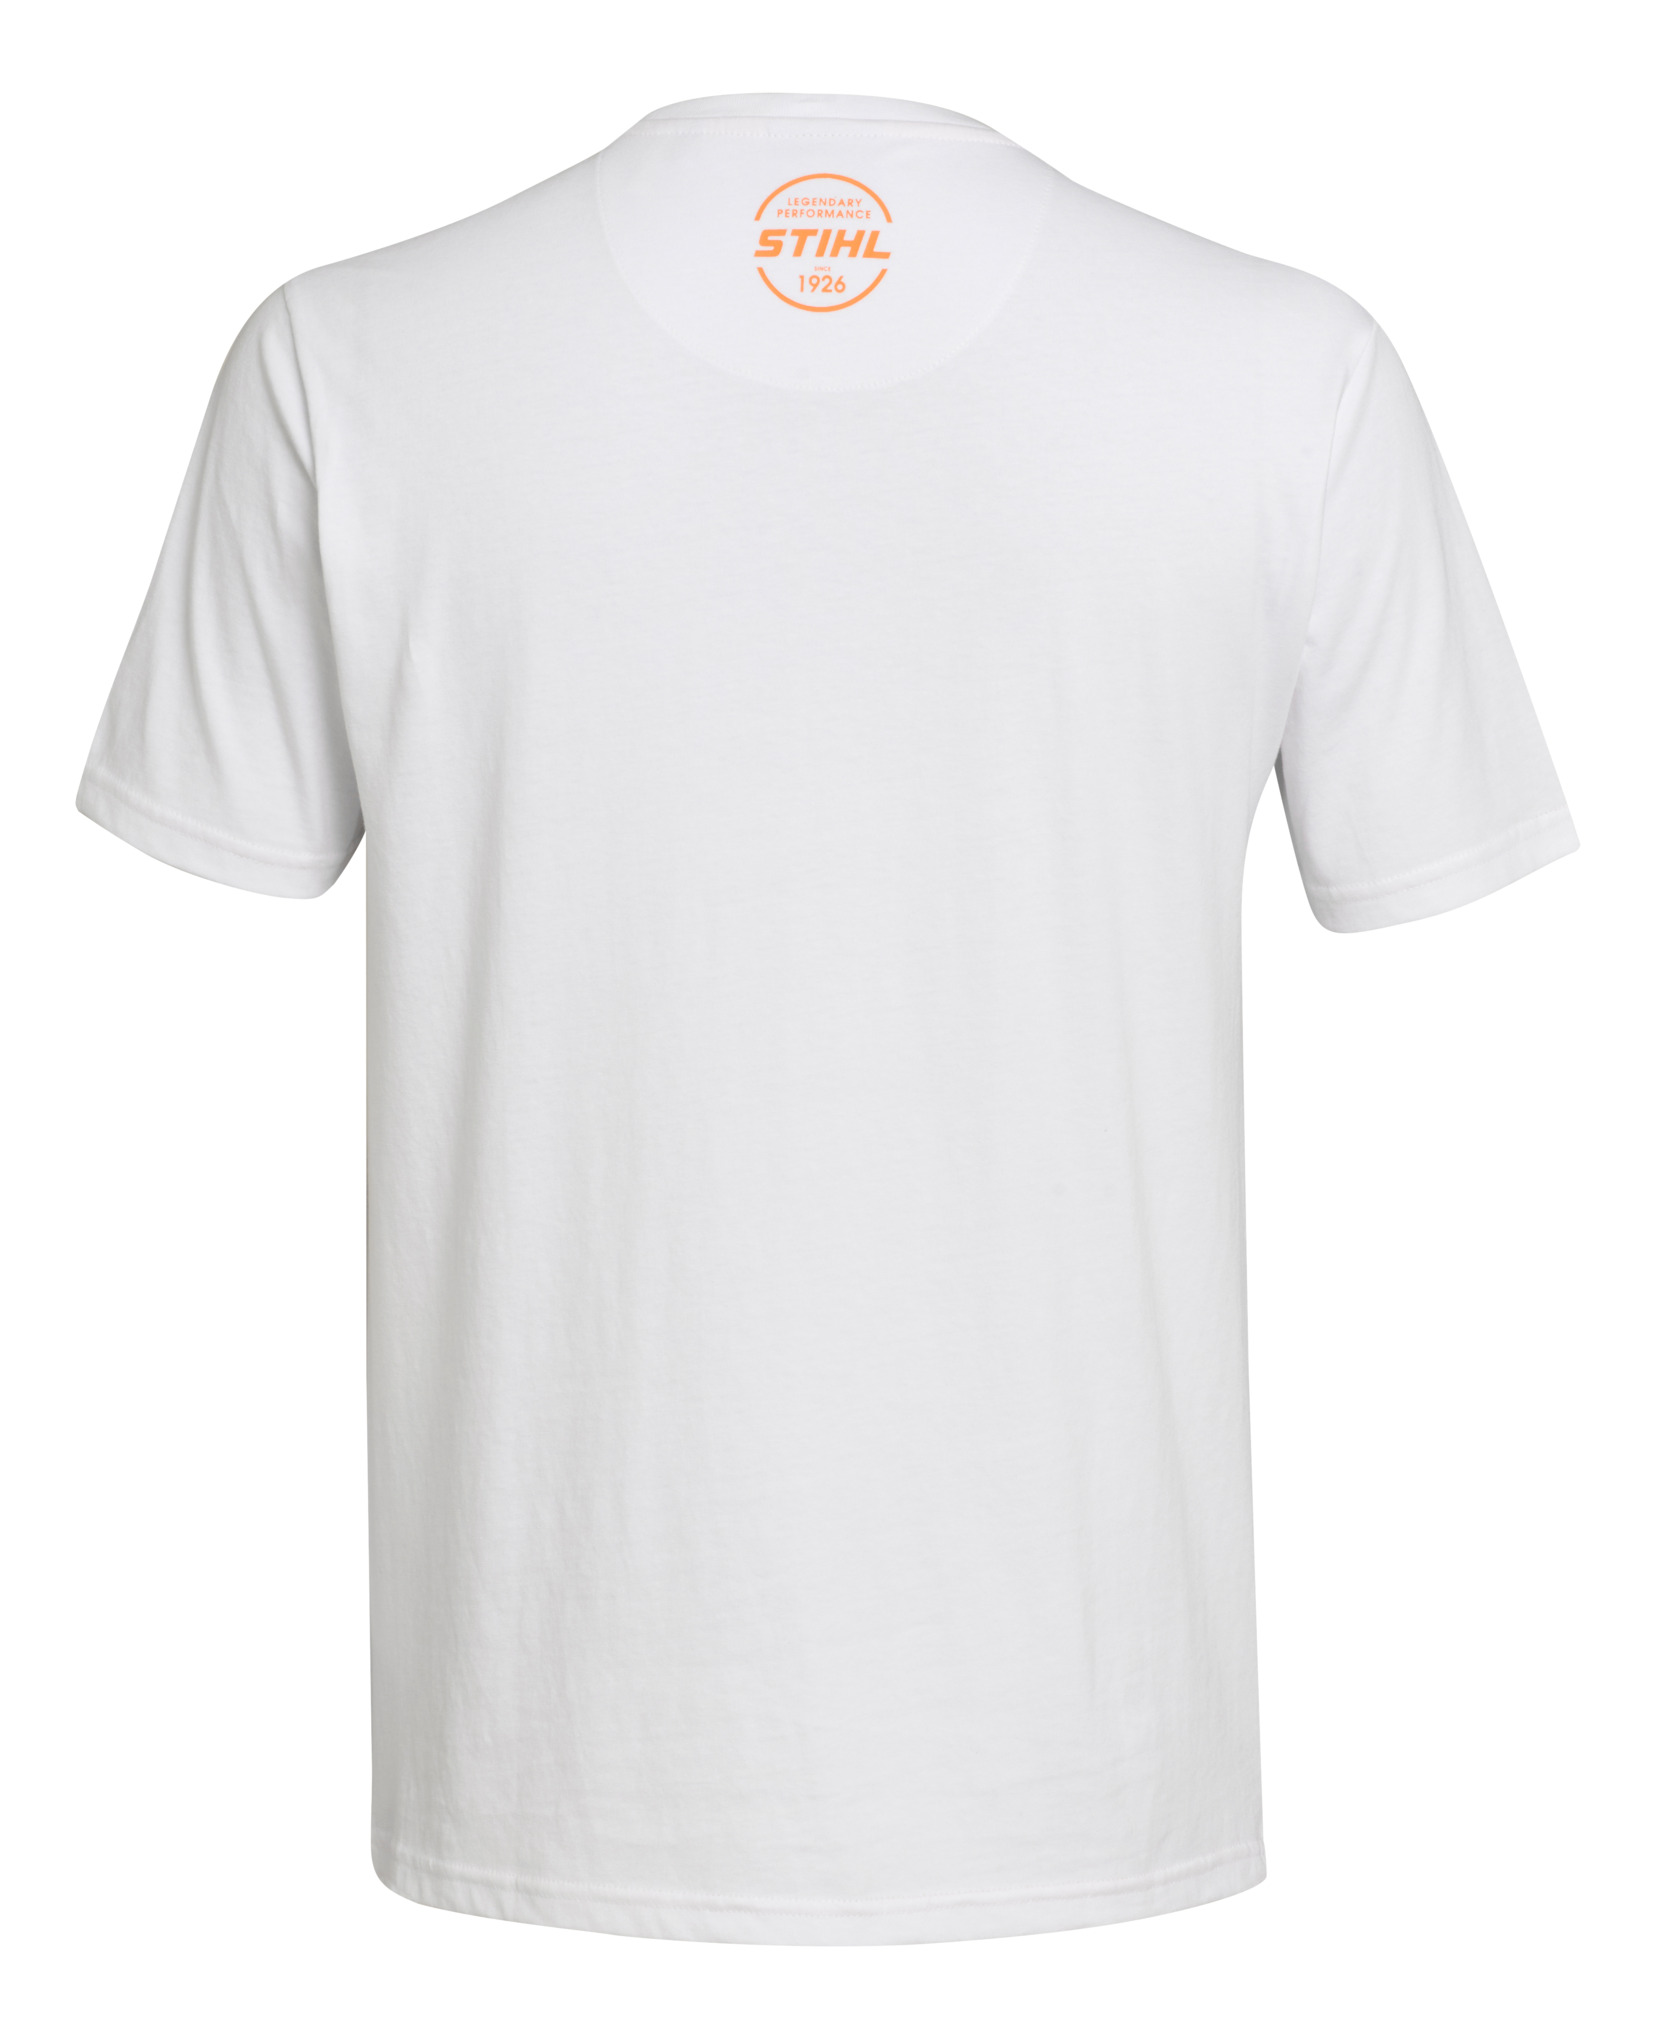 Camiseta LOGO, UNISEX, blanco